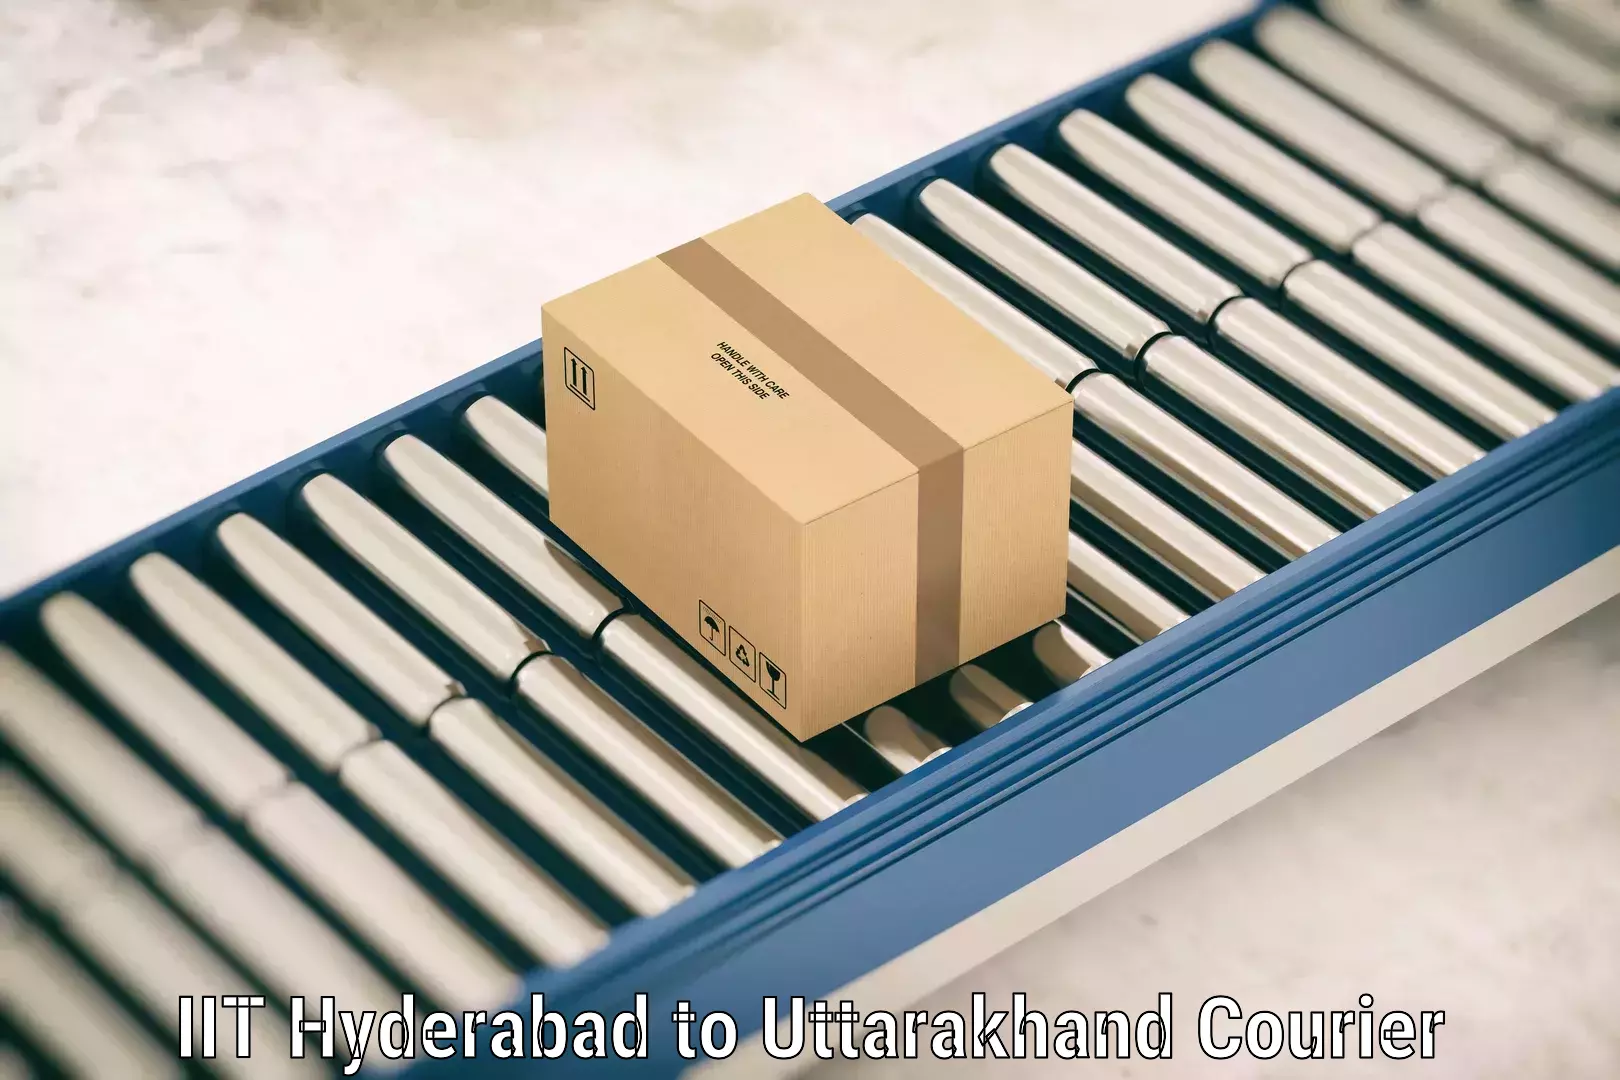 Luggage shipping consultation IIT Hyderabad to Uttarakhand